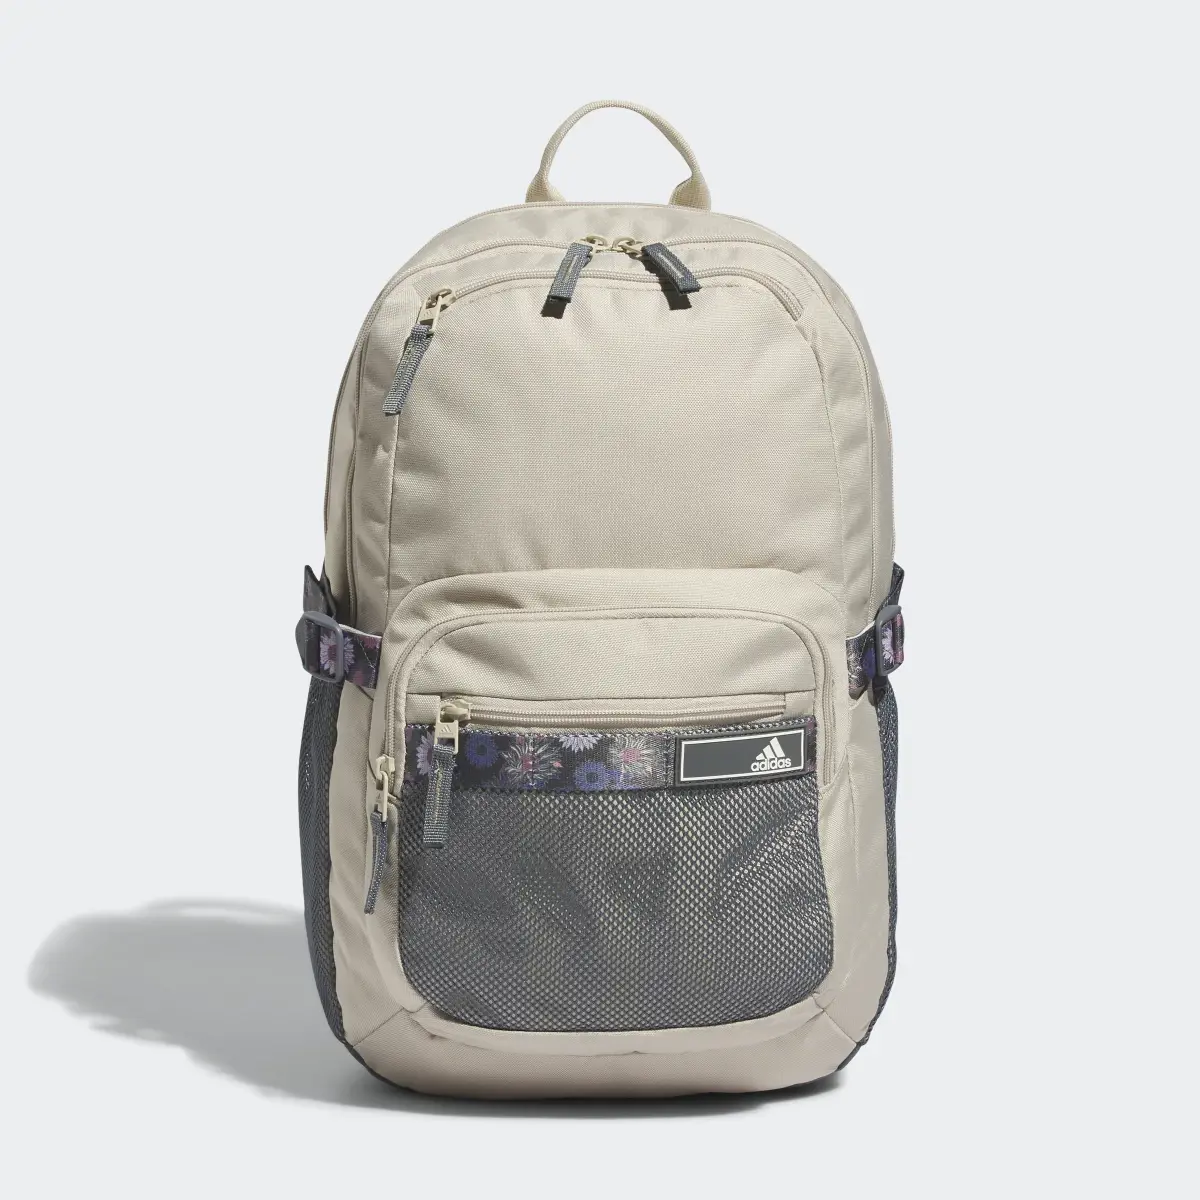 Adidas Energy Backpack. 2